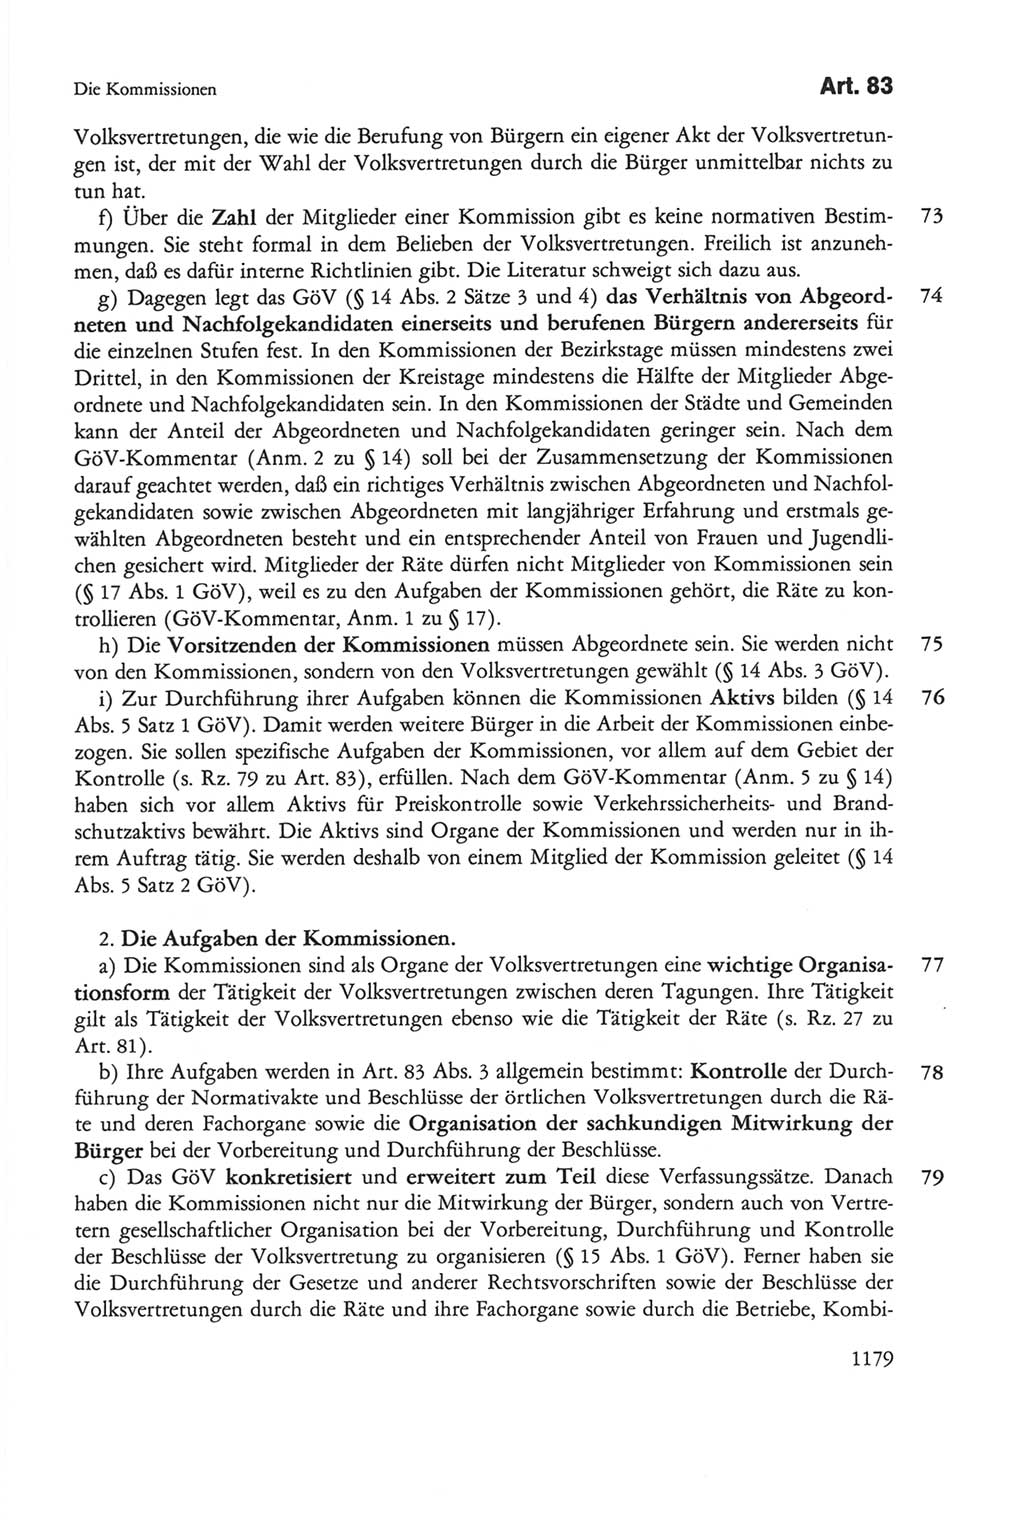 Die sozialistische Verfassung der Deutschen Demokratischen Republik (DDR), Kommentar 1982, Seite 1179 (Soz. Verf. DDR Komm. 1982, S. 1179)